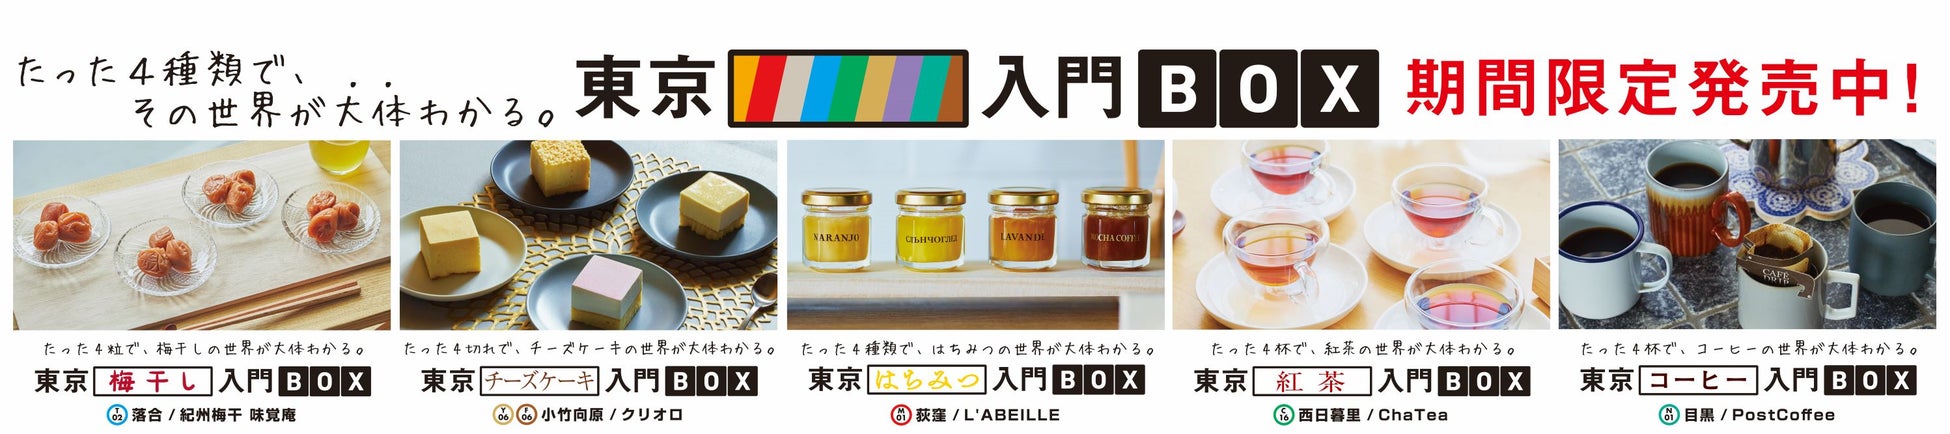 博報堂、東京メトロと共同で新たな食体験を提供する「東京〇〇入門BOX」を発売開始